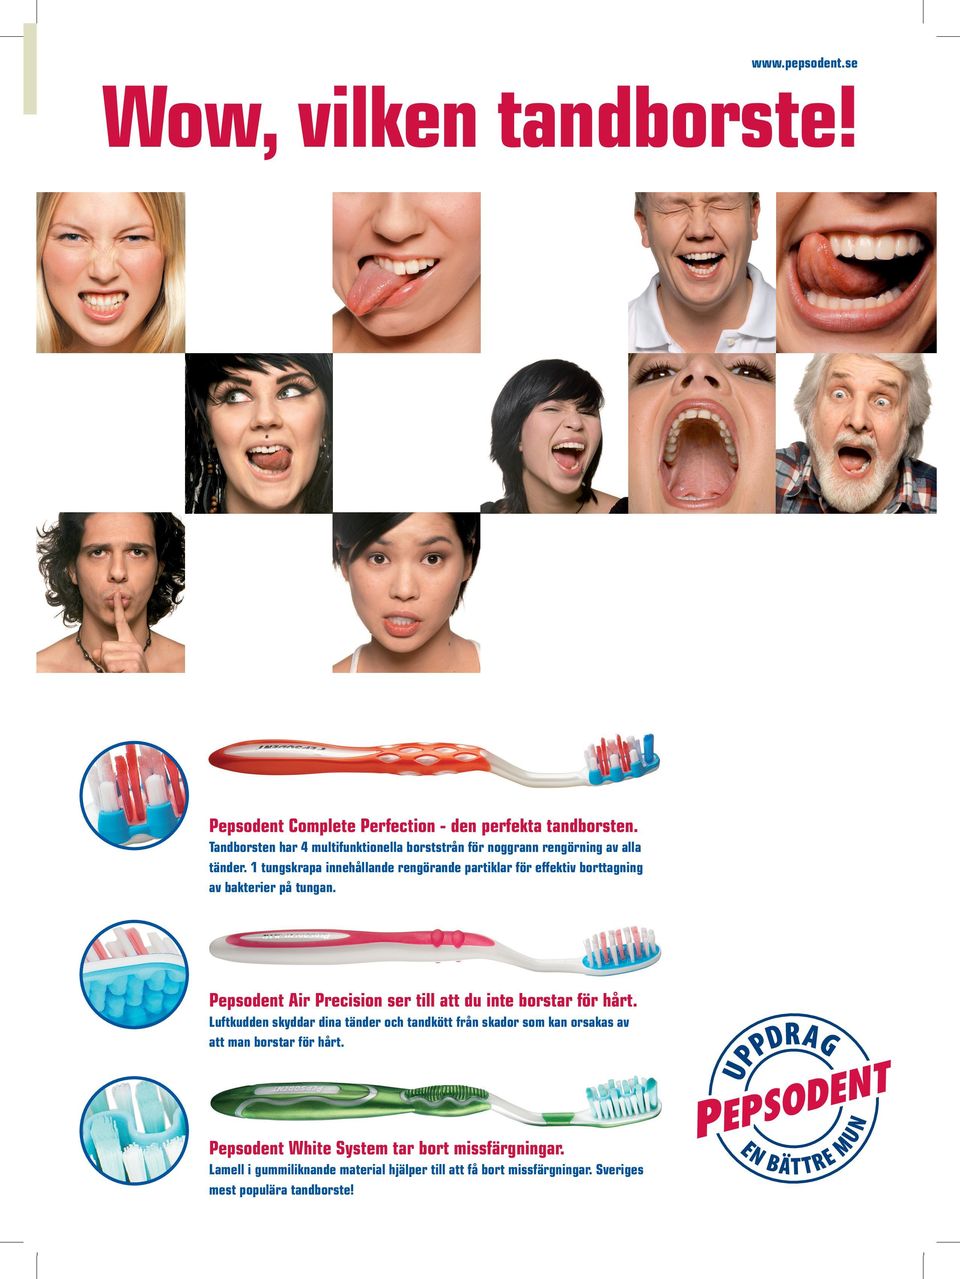 1 tungskrapa innehållande rengörande partiklar för effektiv borttagning av bakterier på tungan.